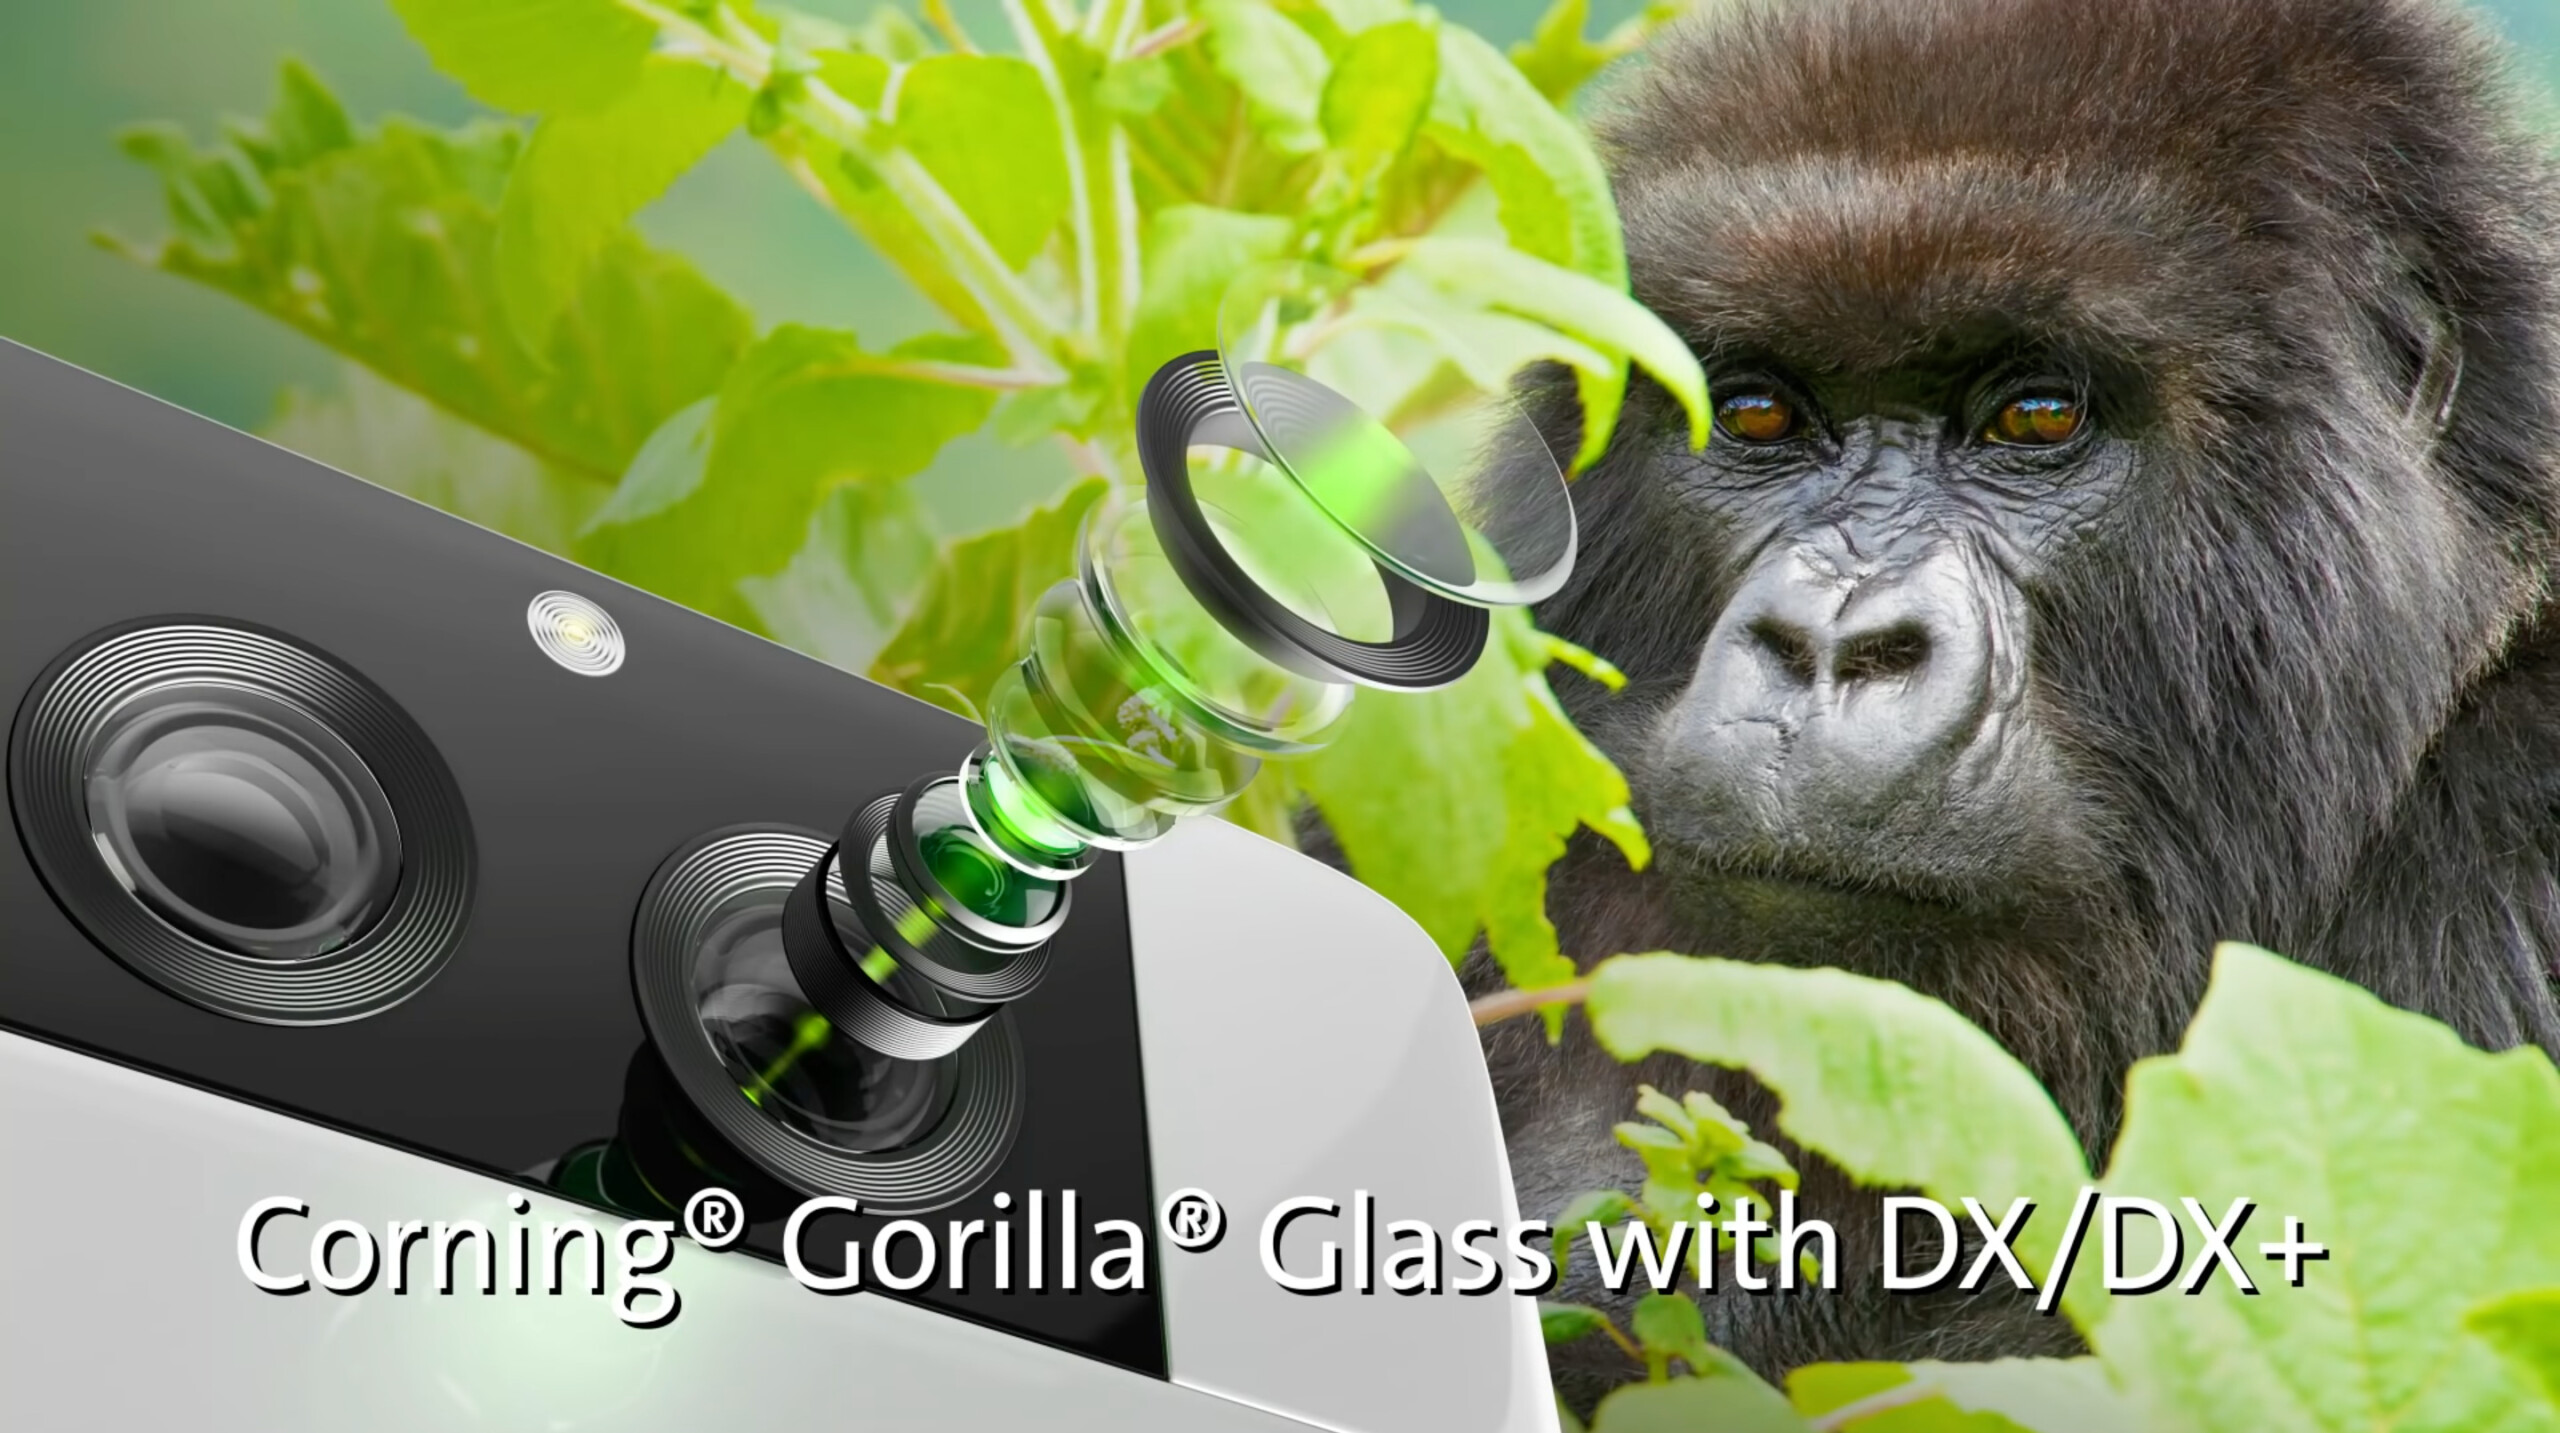 Corning lance un verre Gorilla Glass conçu pour améliorer la qualité photo des smartphones